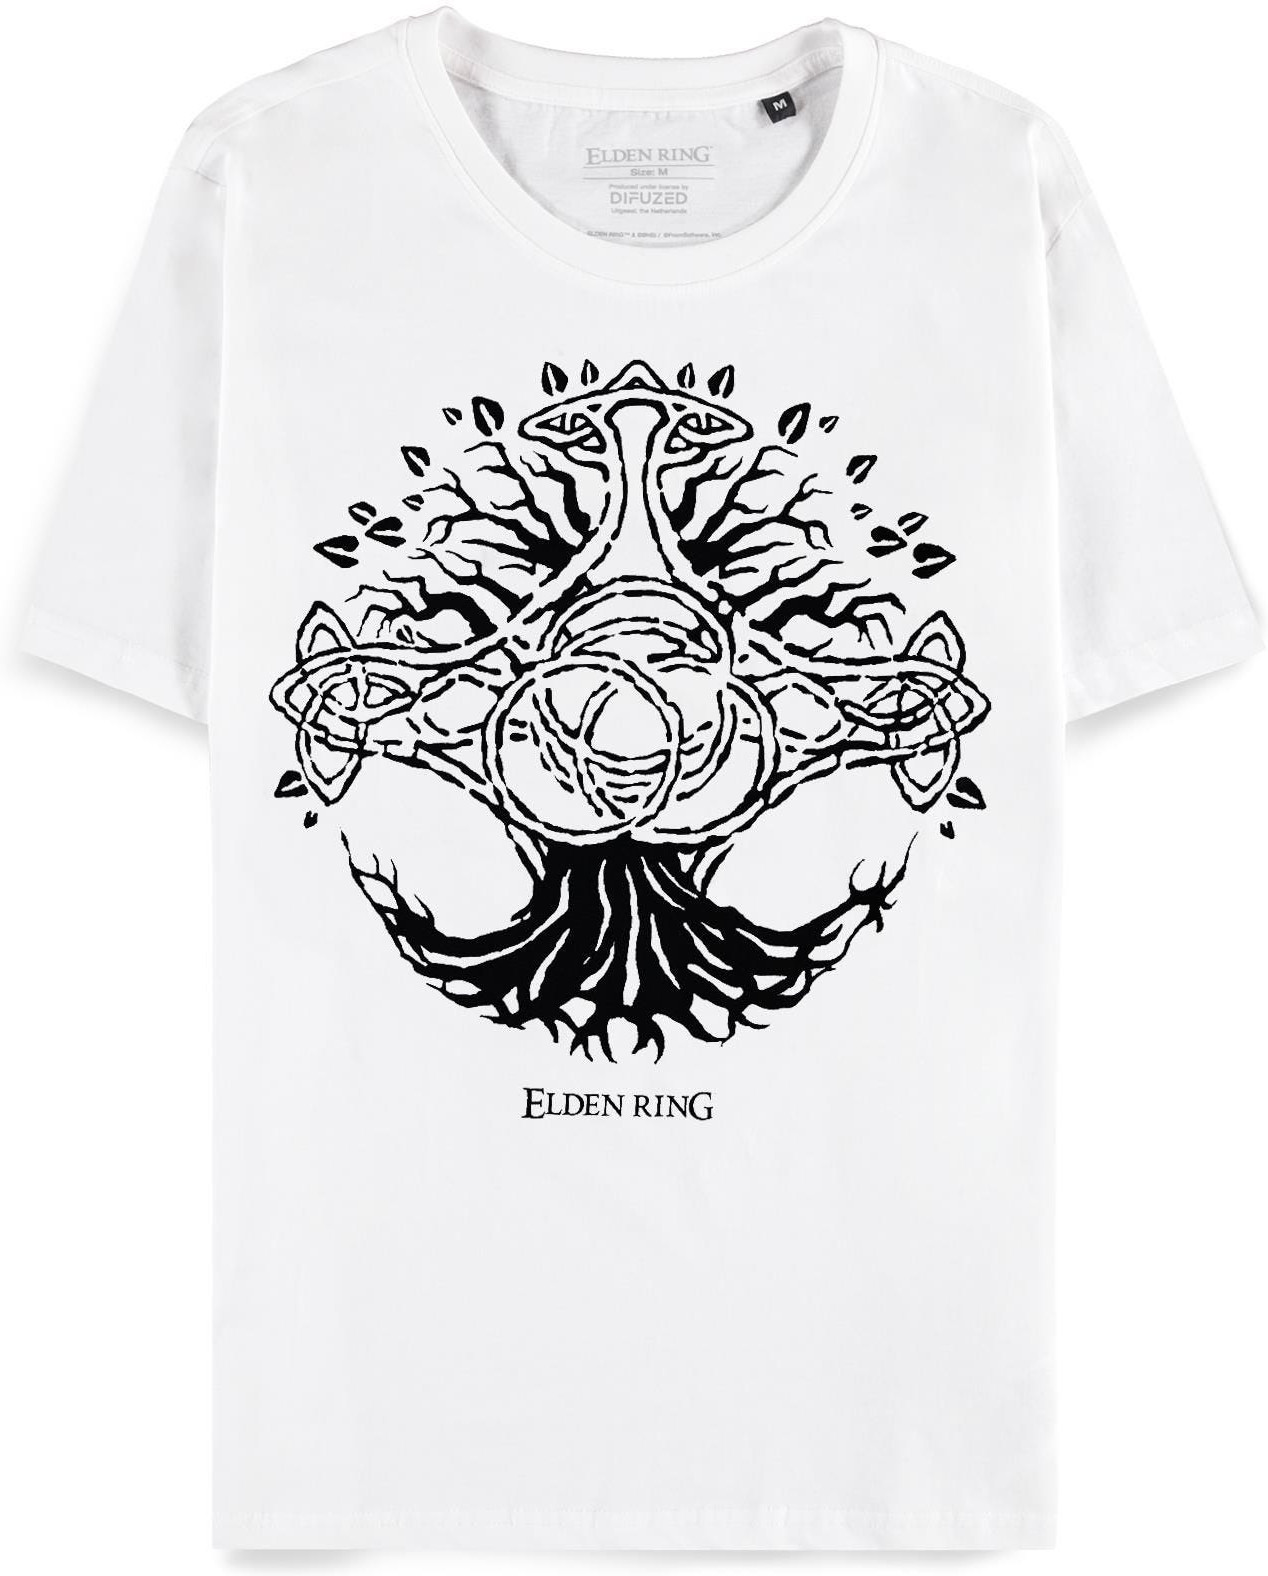 Elden Ring - Women's Short Sleeved T-shirt